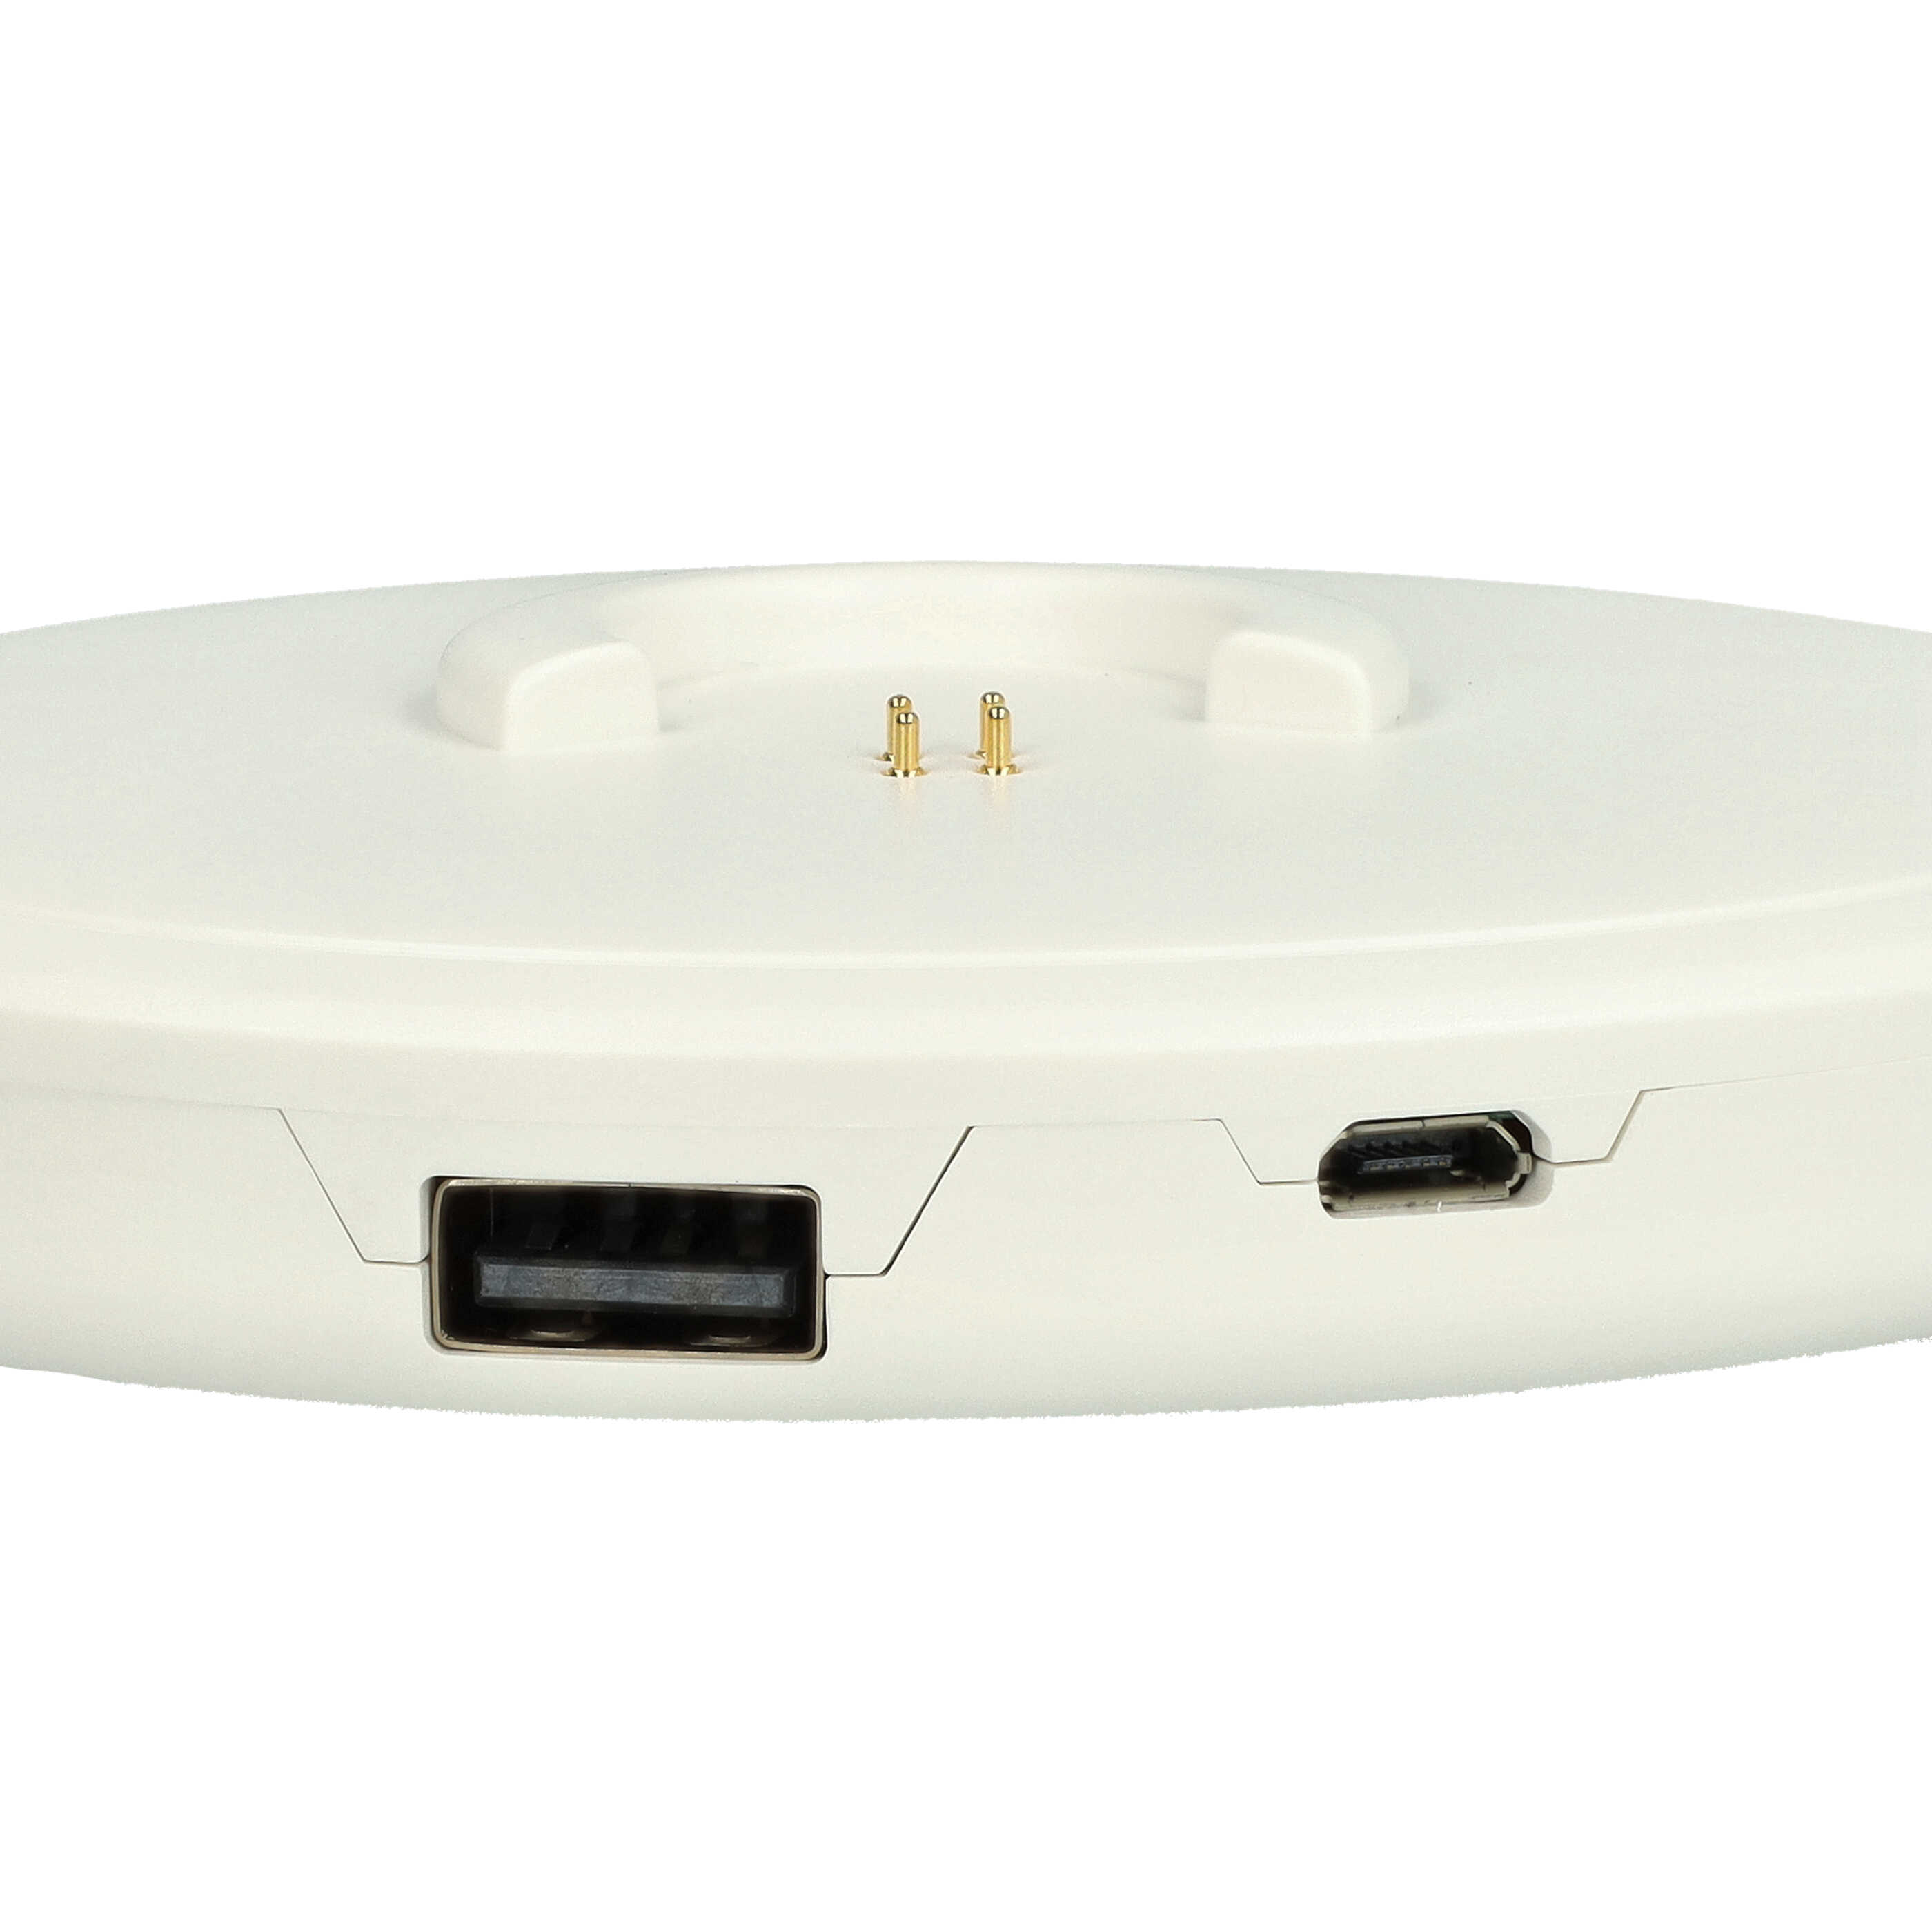 Estación carga + cable USB Micro para altavoces Bose SoundLink Revolve, Revolve+ - 95 cm blanco